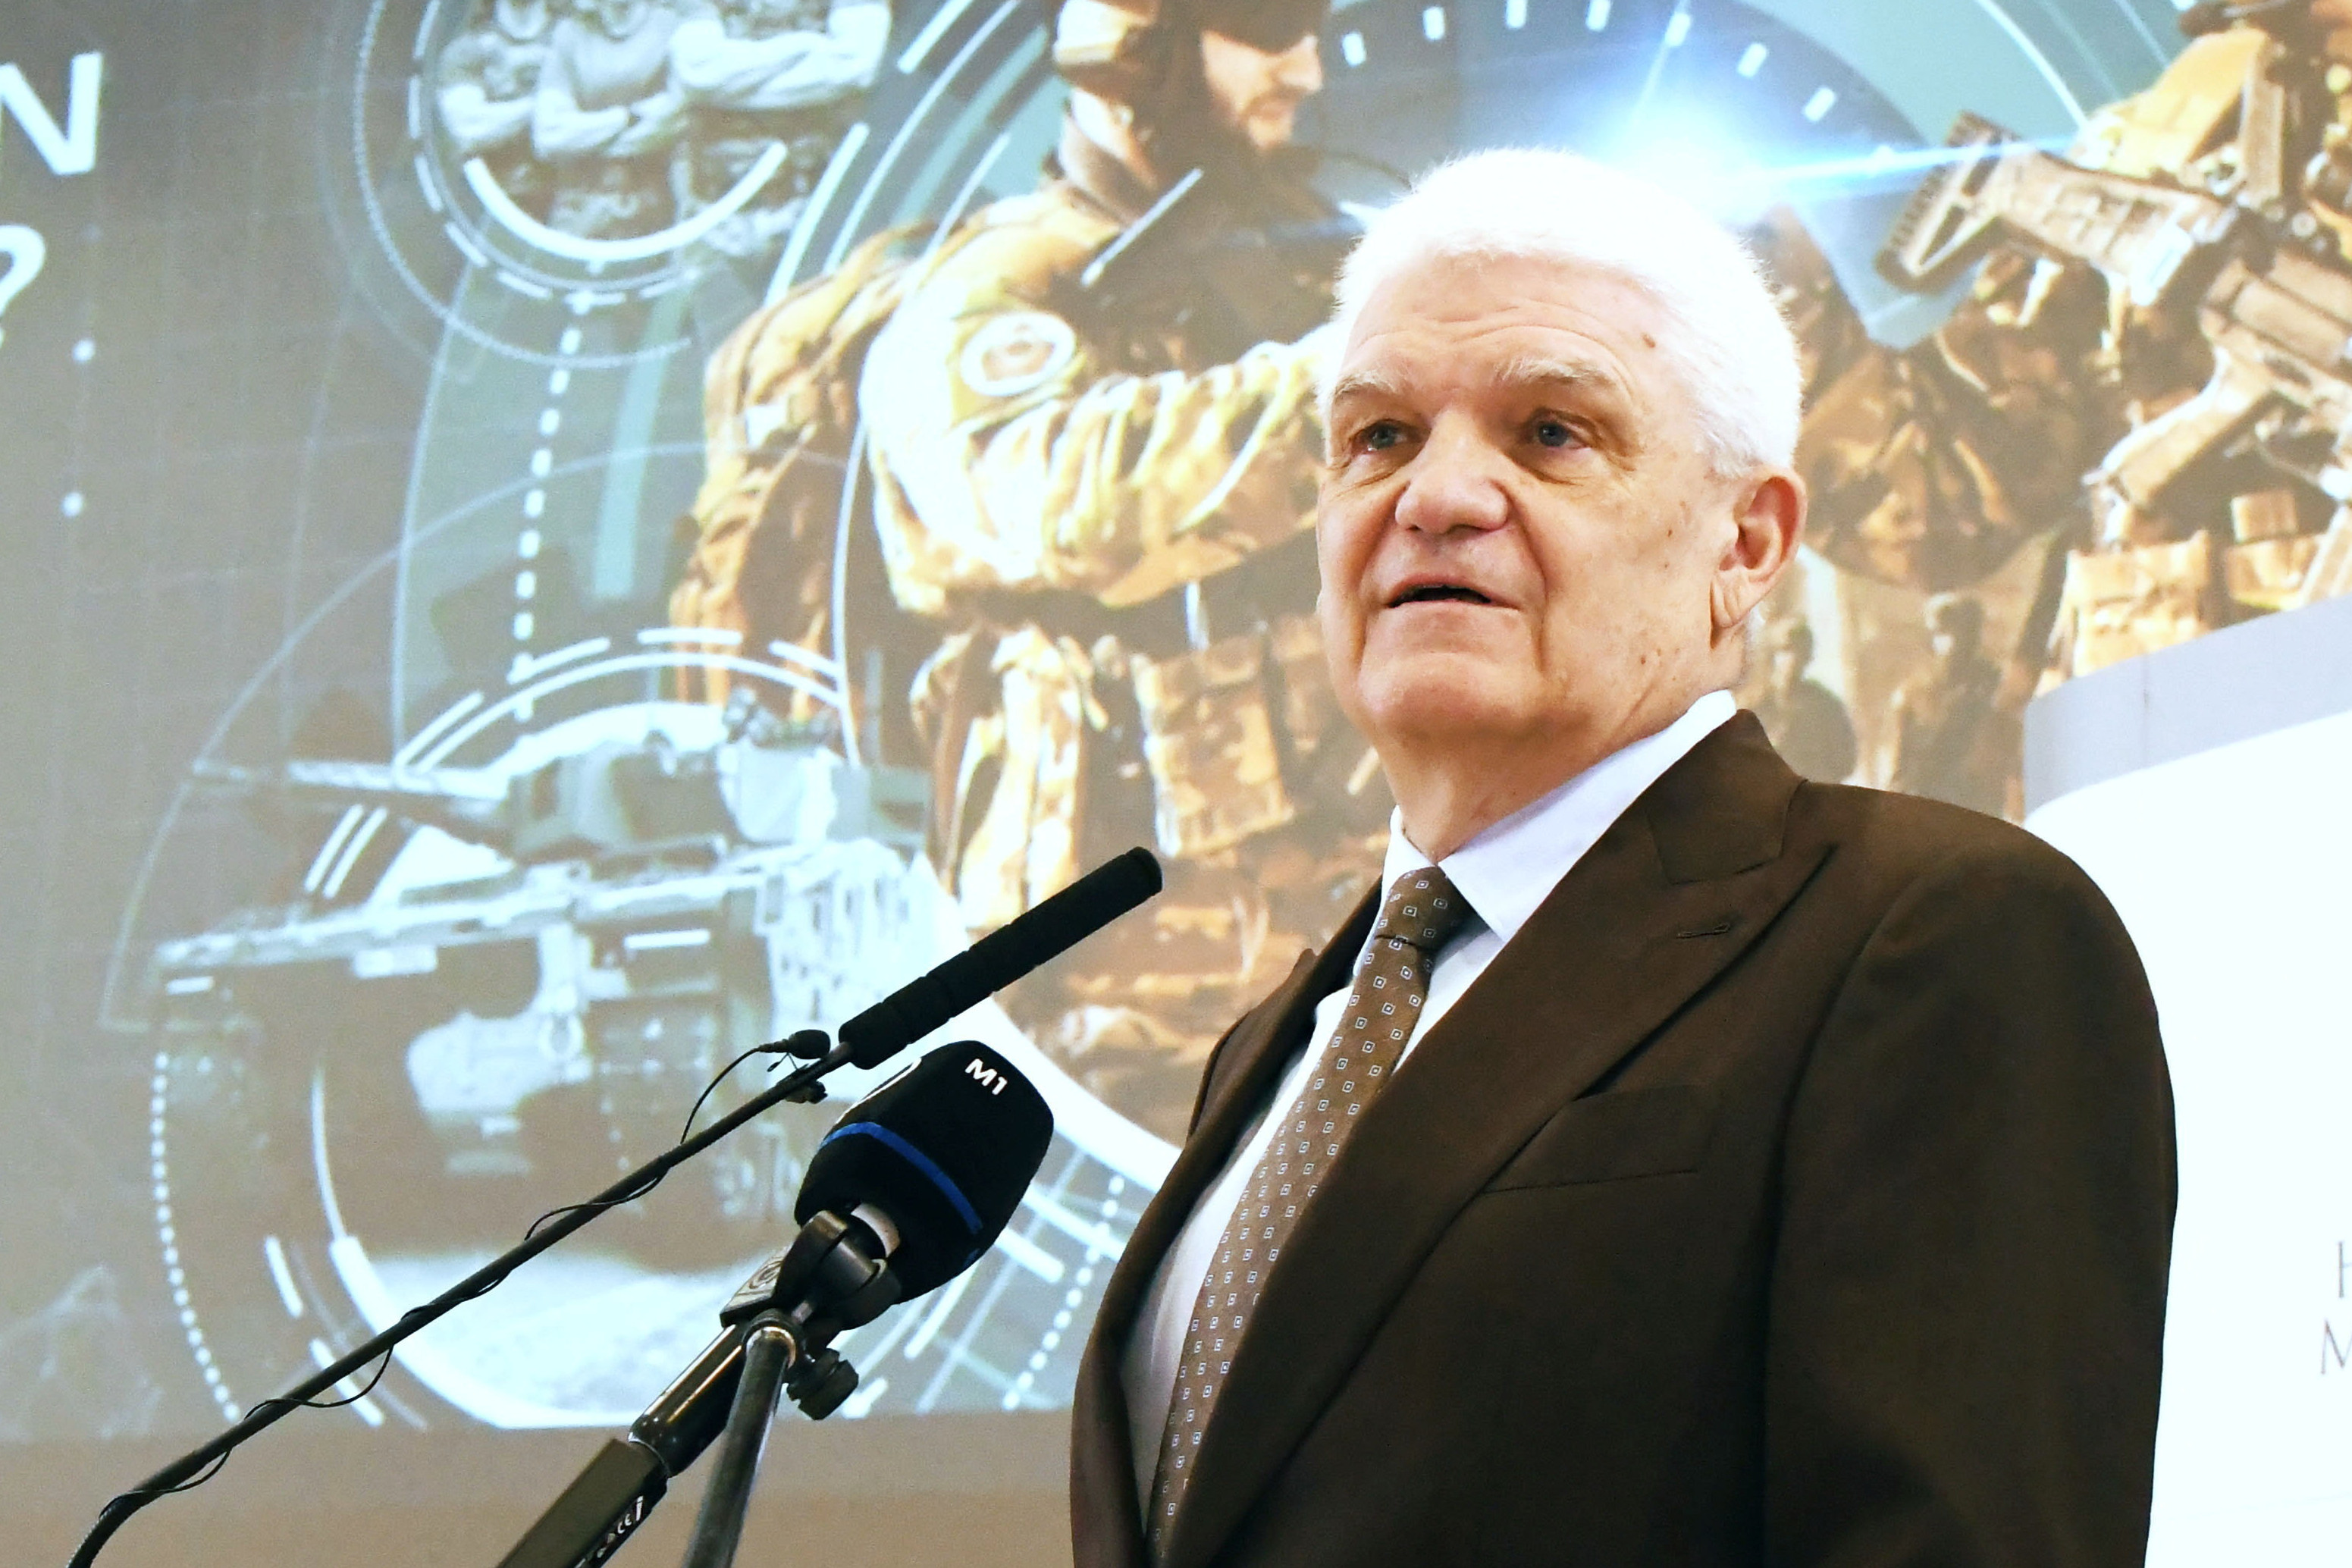 Szalay Ferenc indul Szolnokon újra a kormánypártok polgármesterjelöltjeként